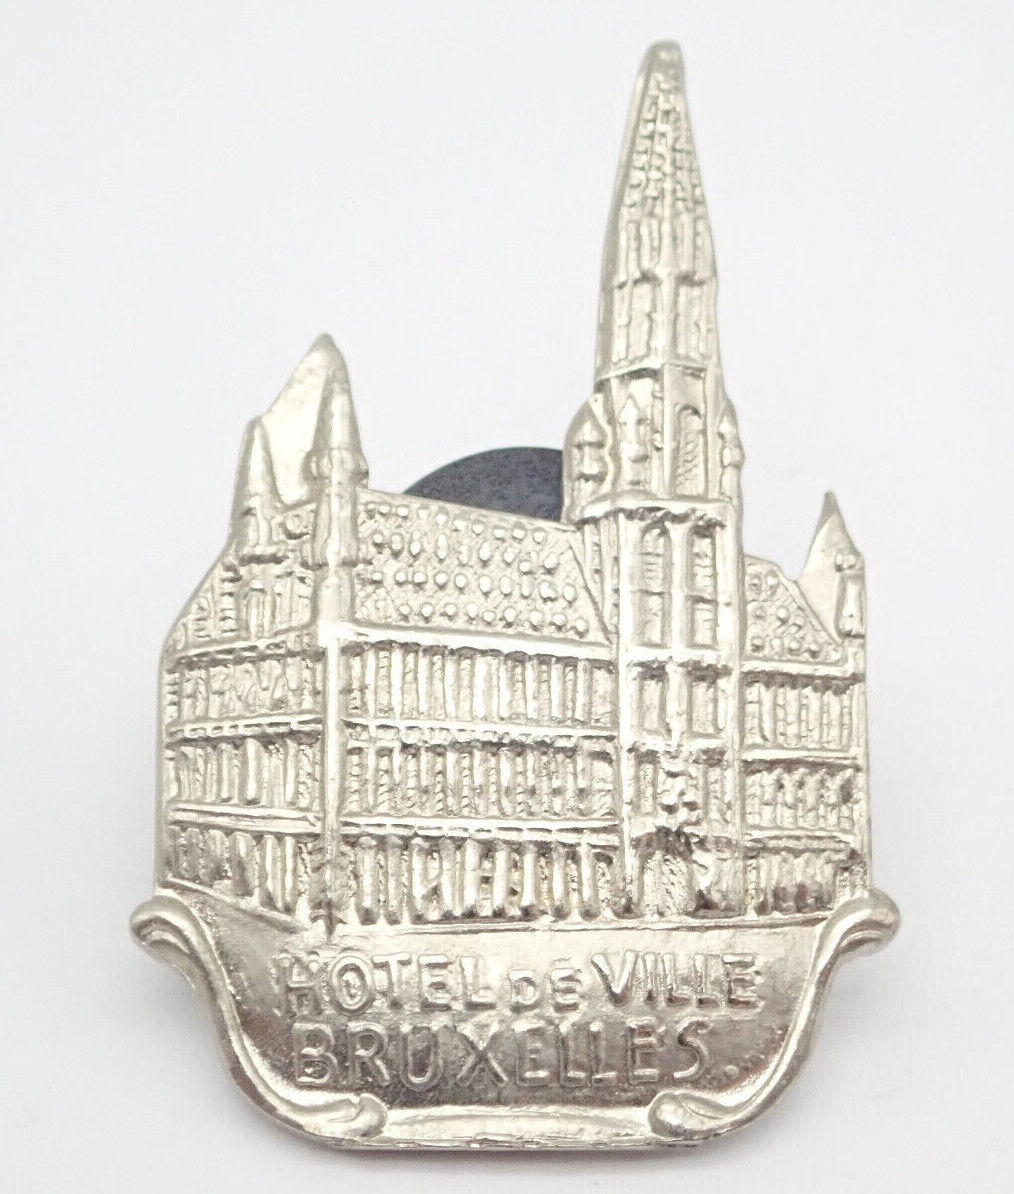 Hotel de Ville Bruxelles Brussels Silver Tone Vintage Lapel Pin